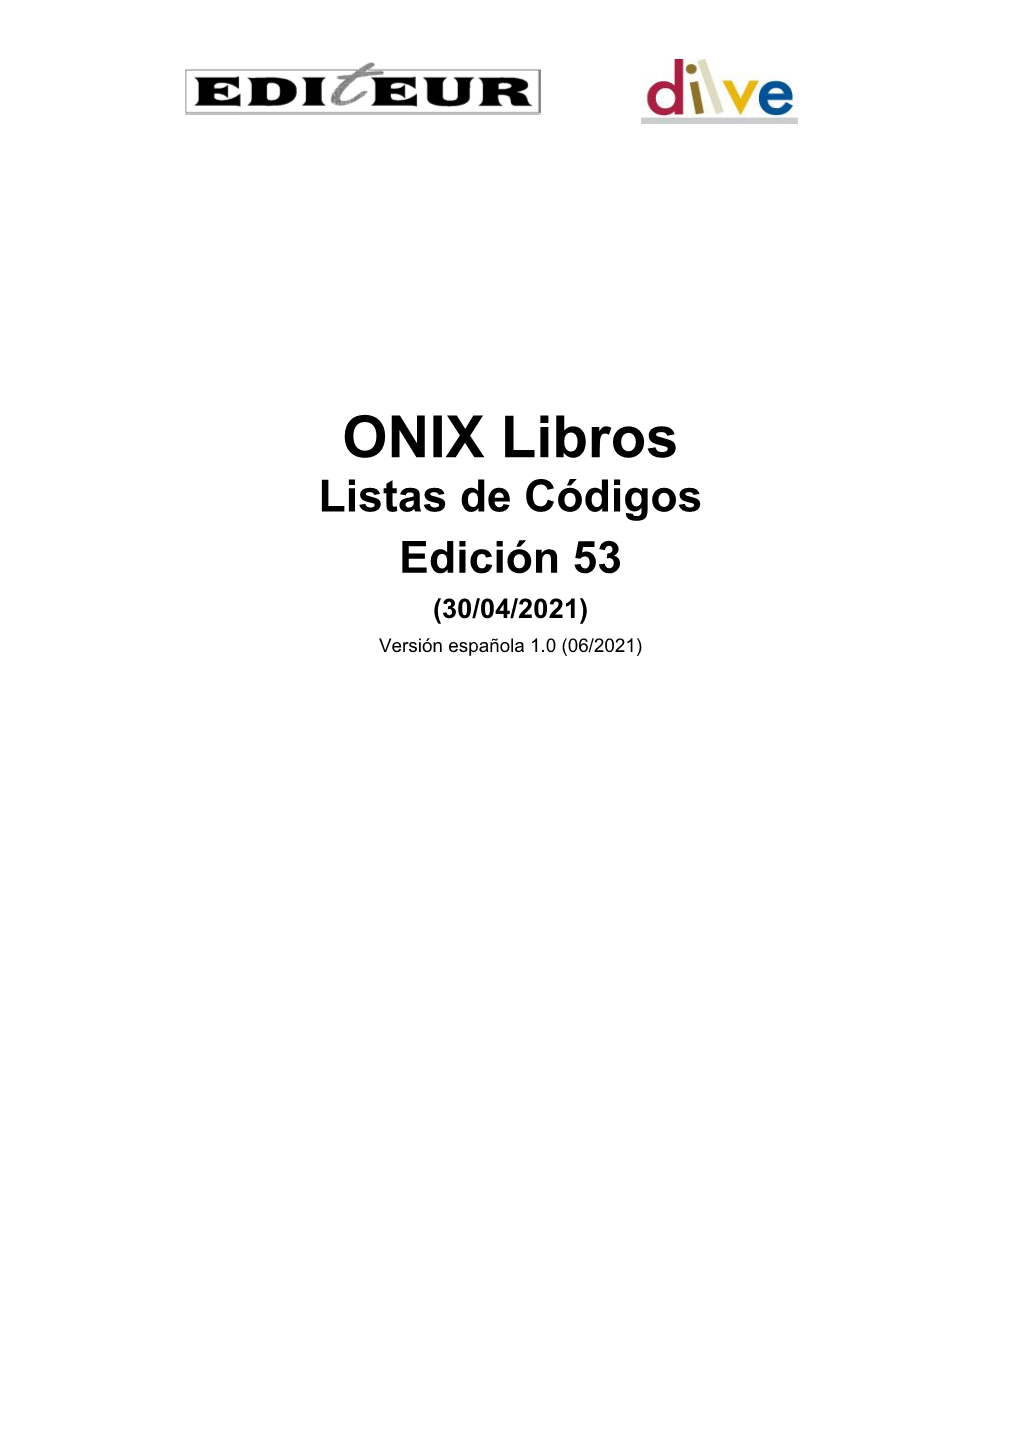 Listas De Códigos ONIX Ed. 53